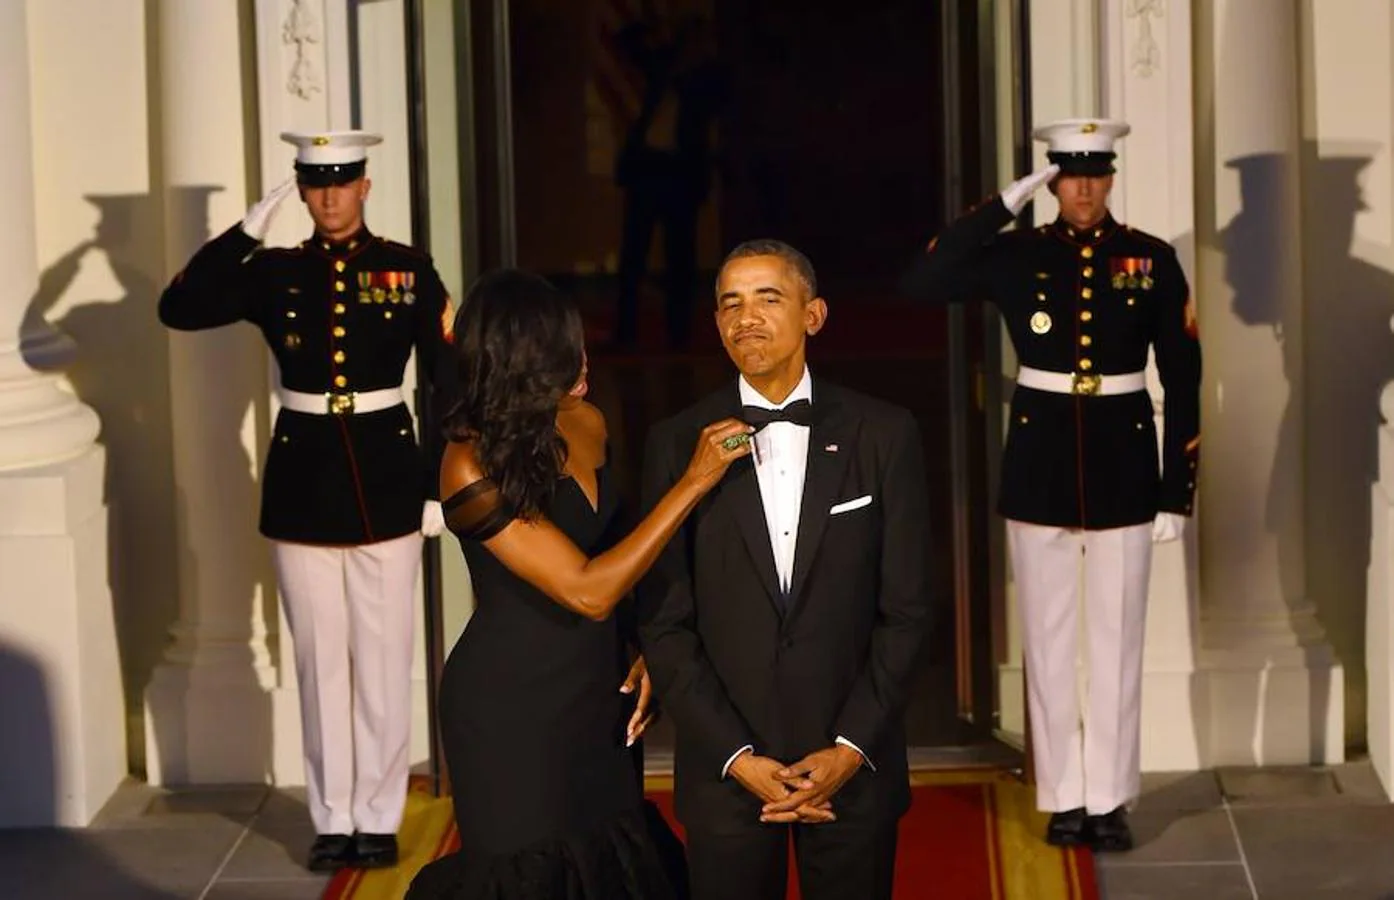 En repetidas ocasiones, ante decenas de miles de personas, han compartido miradas afectuosas o gestos, como cuando Michelle cuidaba a la perfeccón la imagen de su marido antes de los actos oficiales